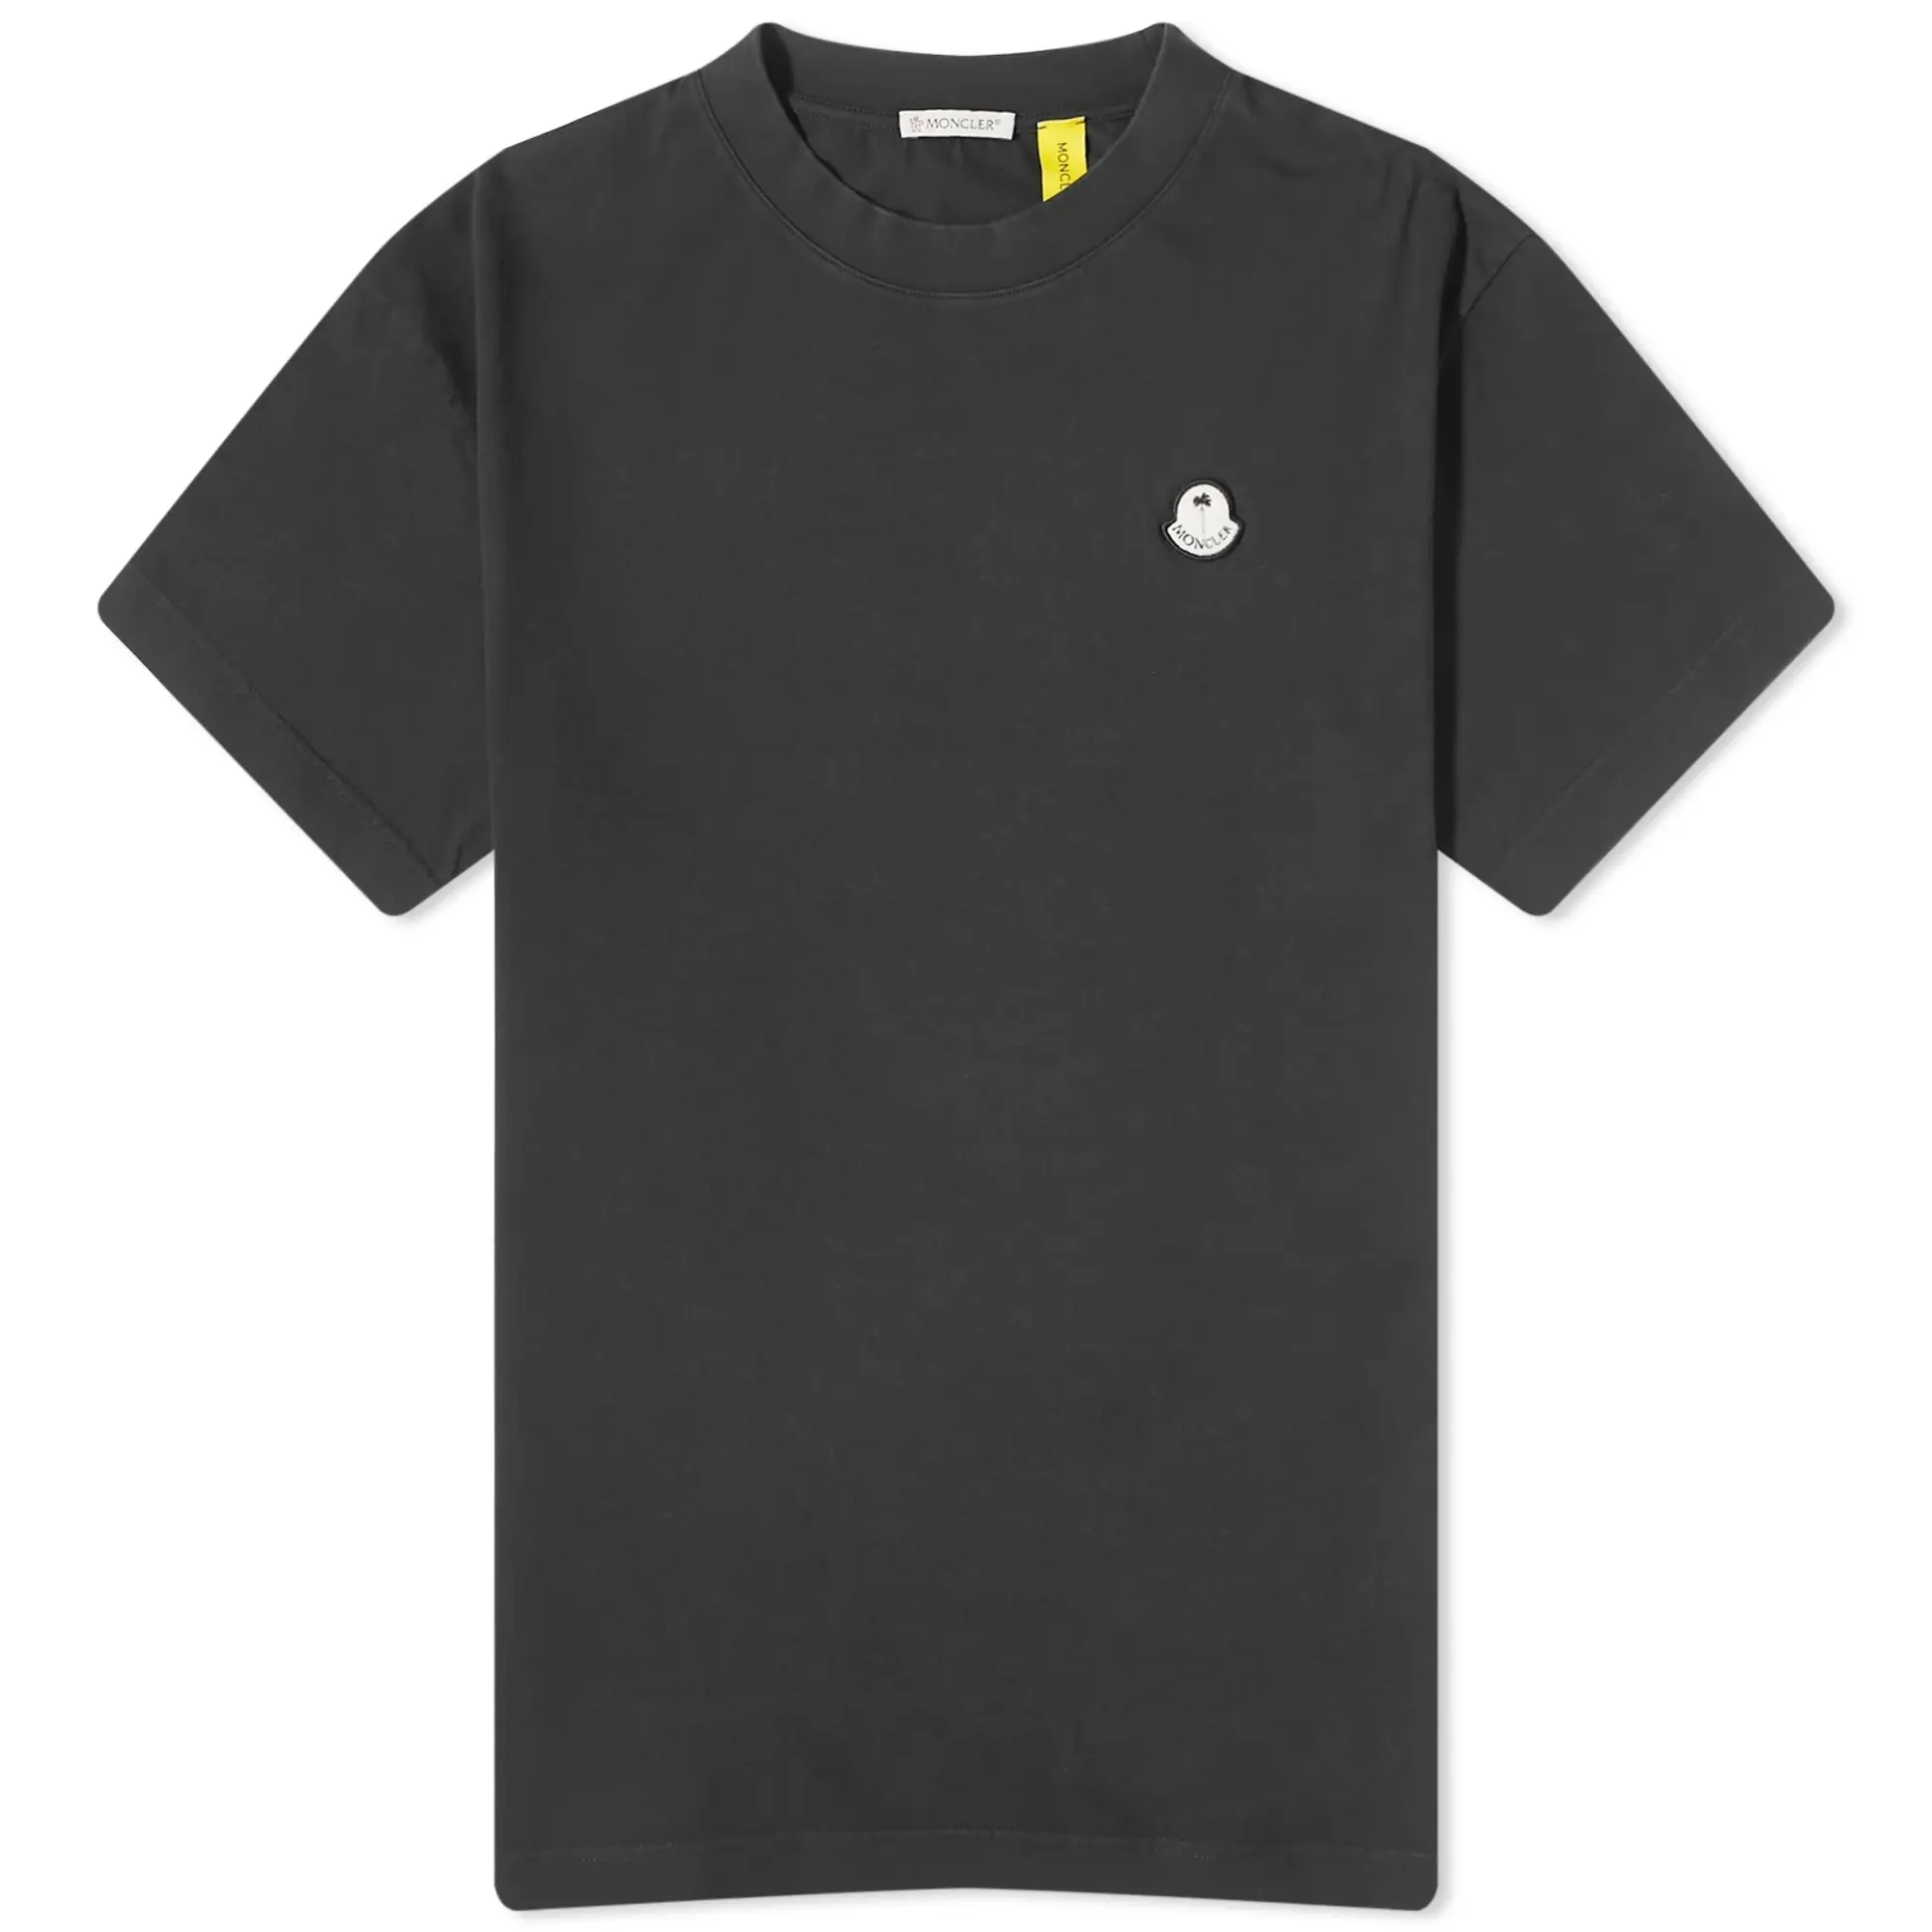 Moncler Genius x Palm Angels T-Shirt Black